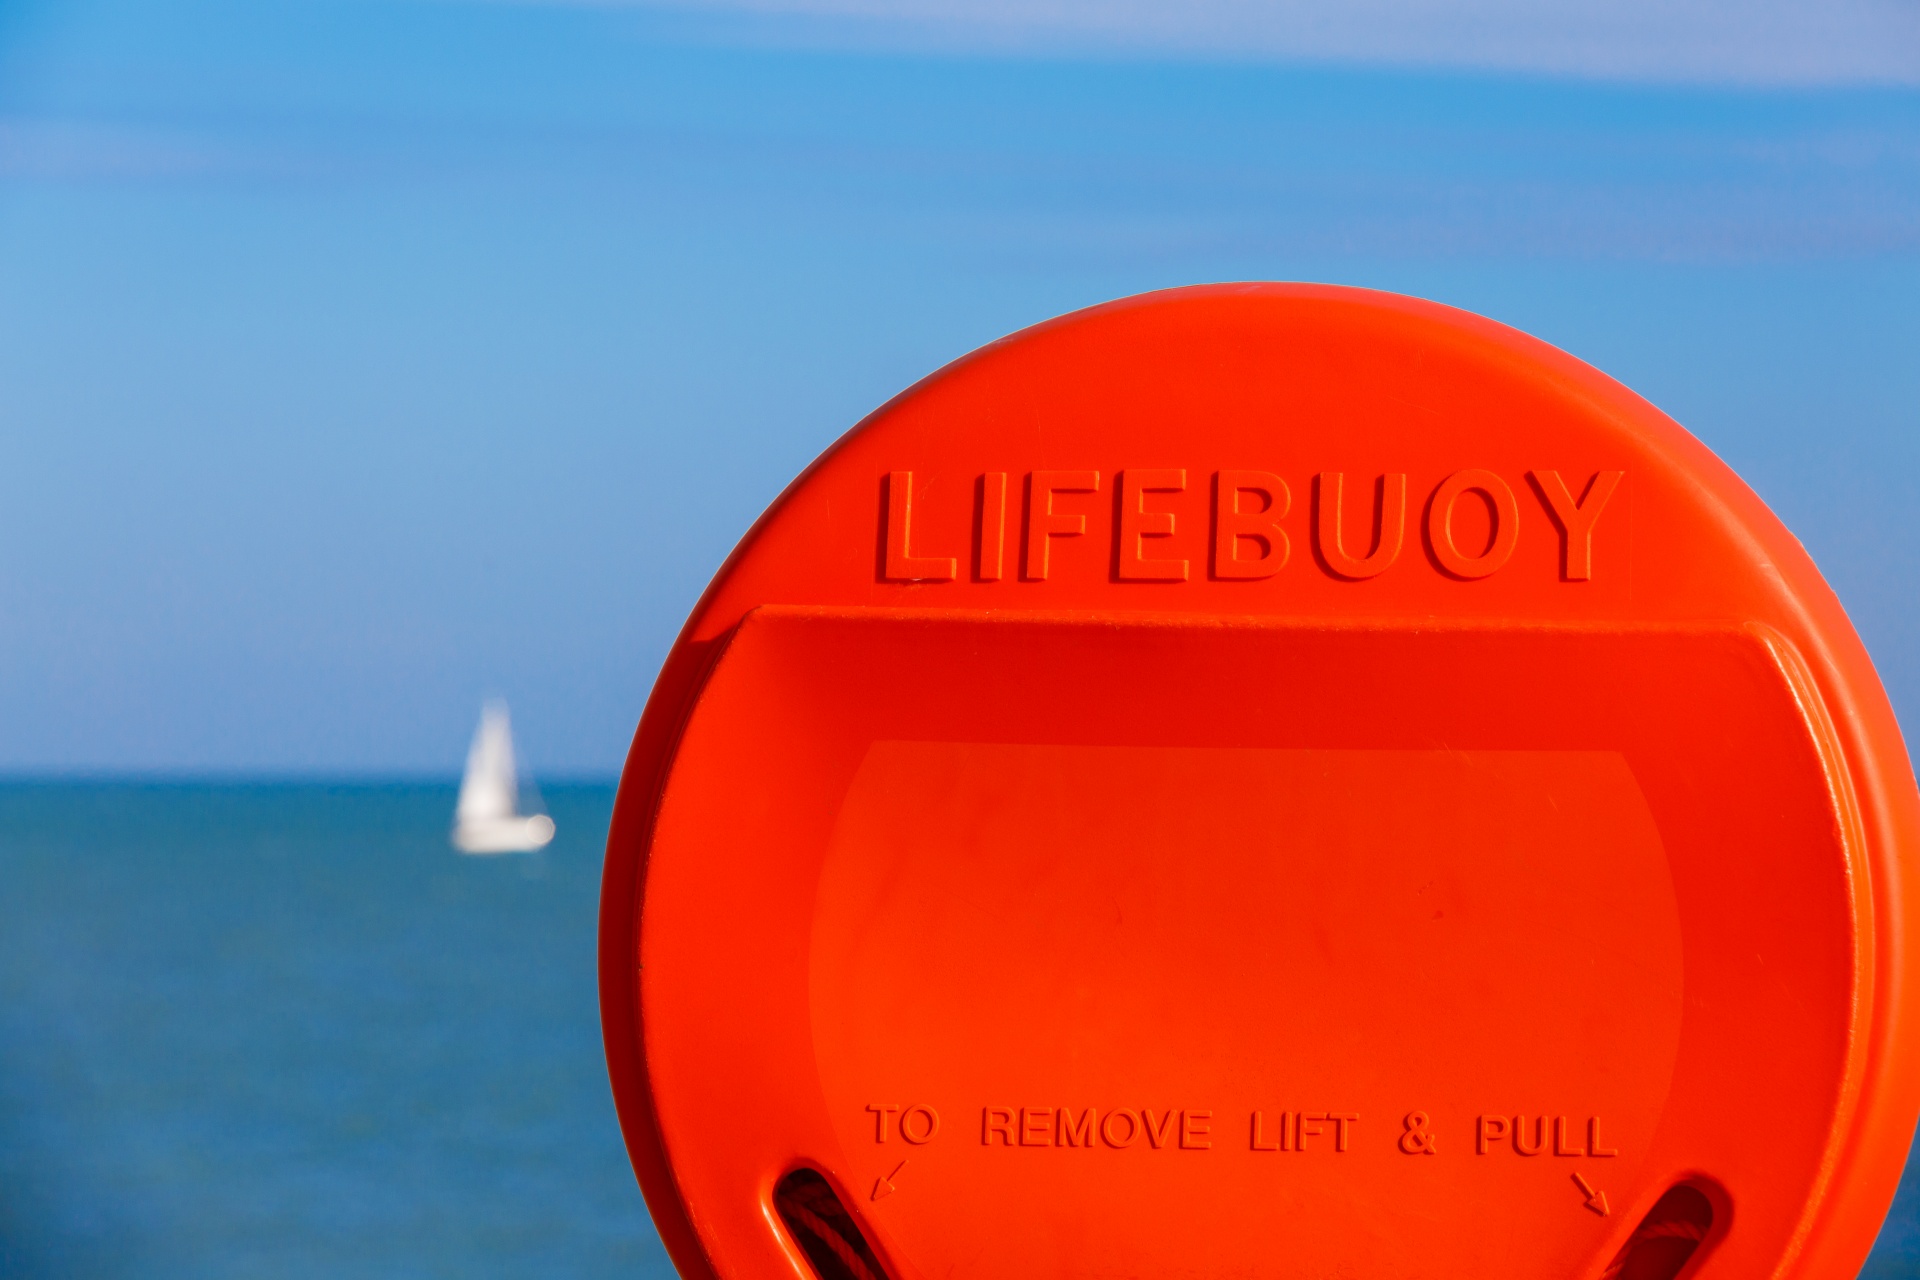 Orange lifebuoy on a shore